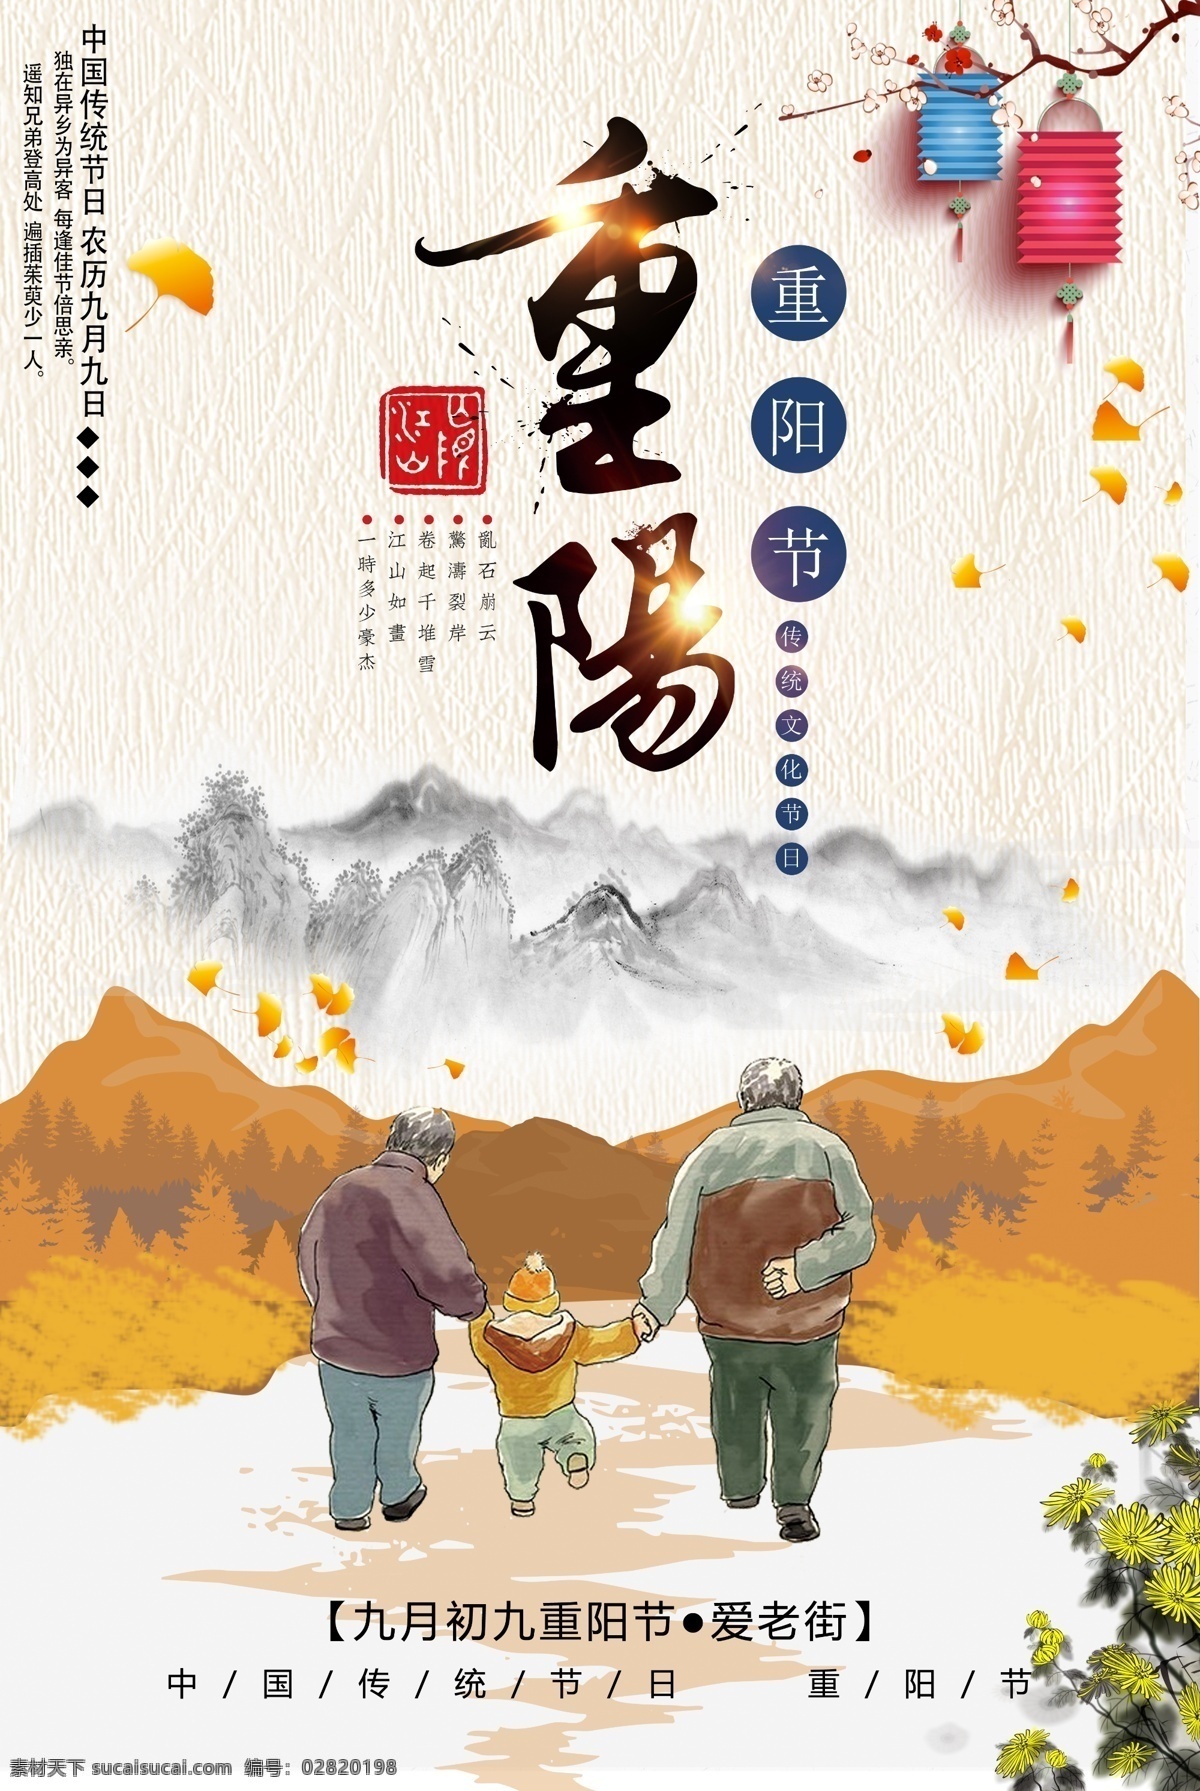 卡通 中国 风 重阳节 海报 模版 中国风 老人 菊花 敬老节 远山 感 兴趣 免费